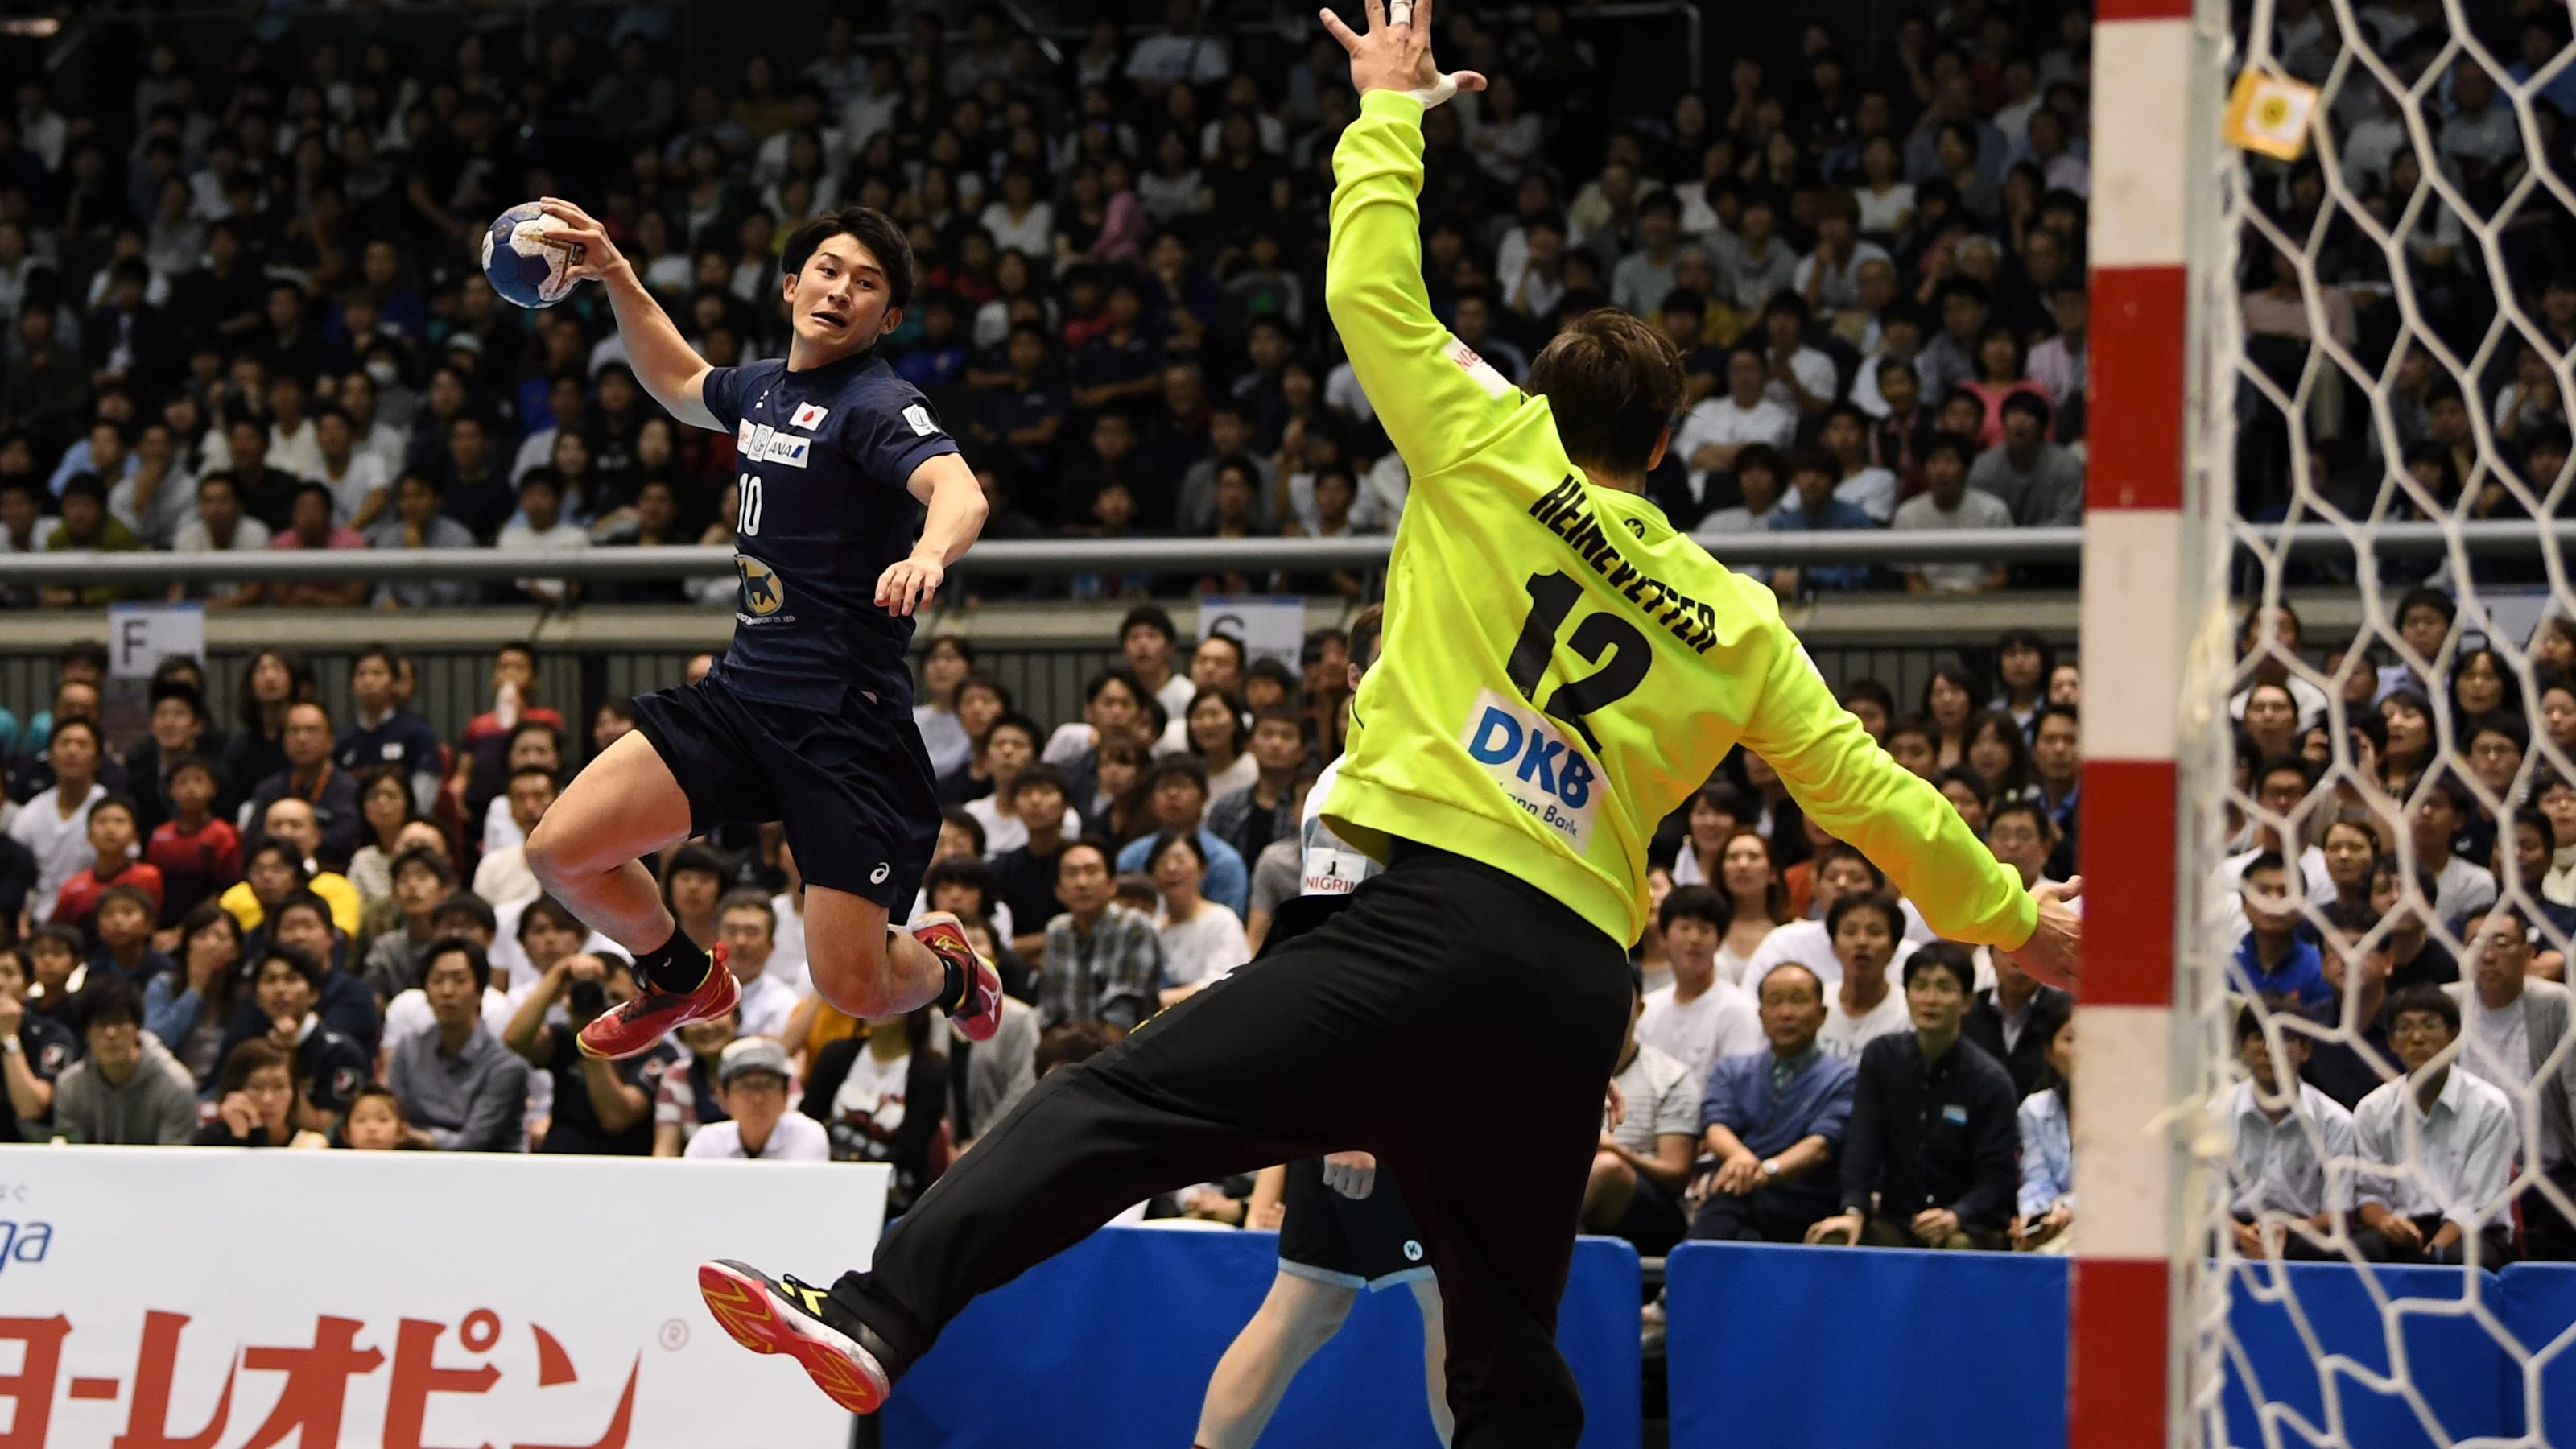 ハンドボールのルールを知って東京五輪を楽しもう 大会形式や注目選手について解説